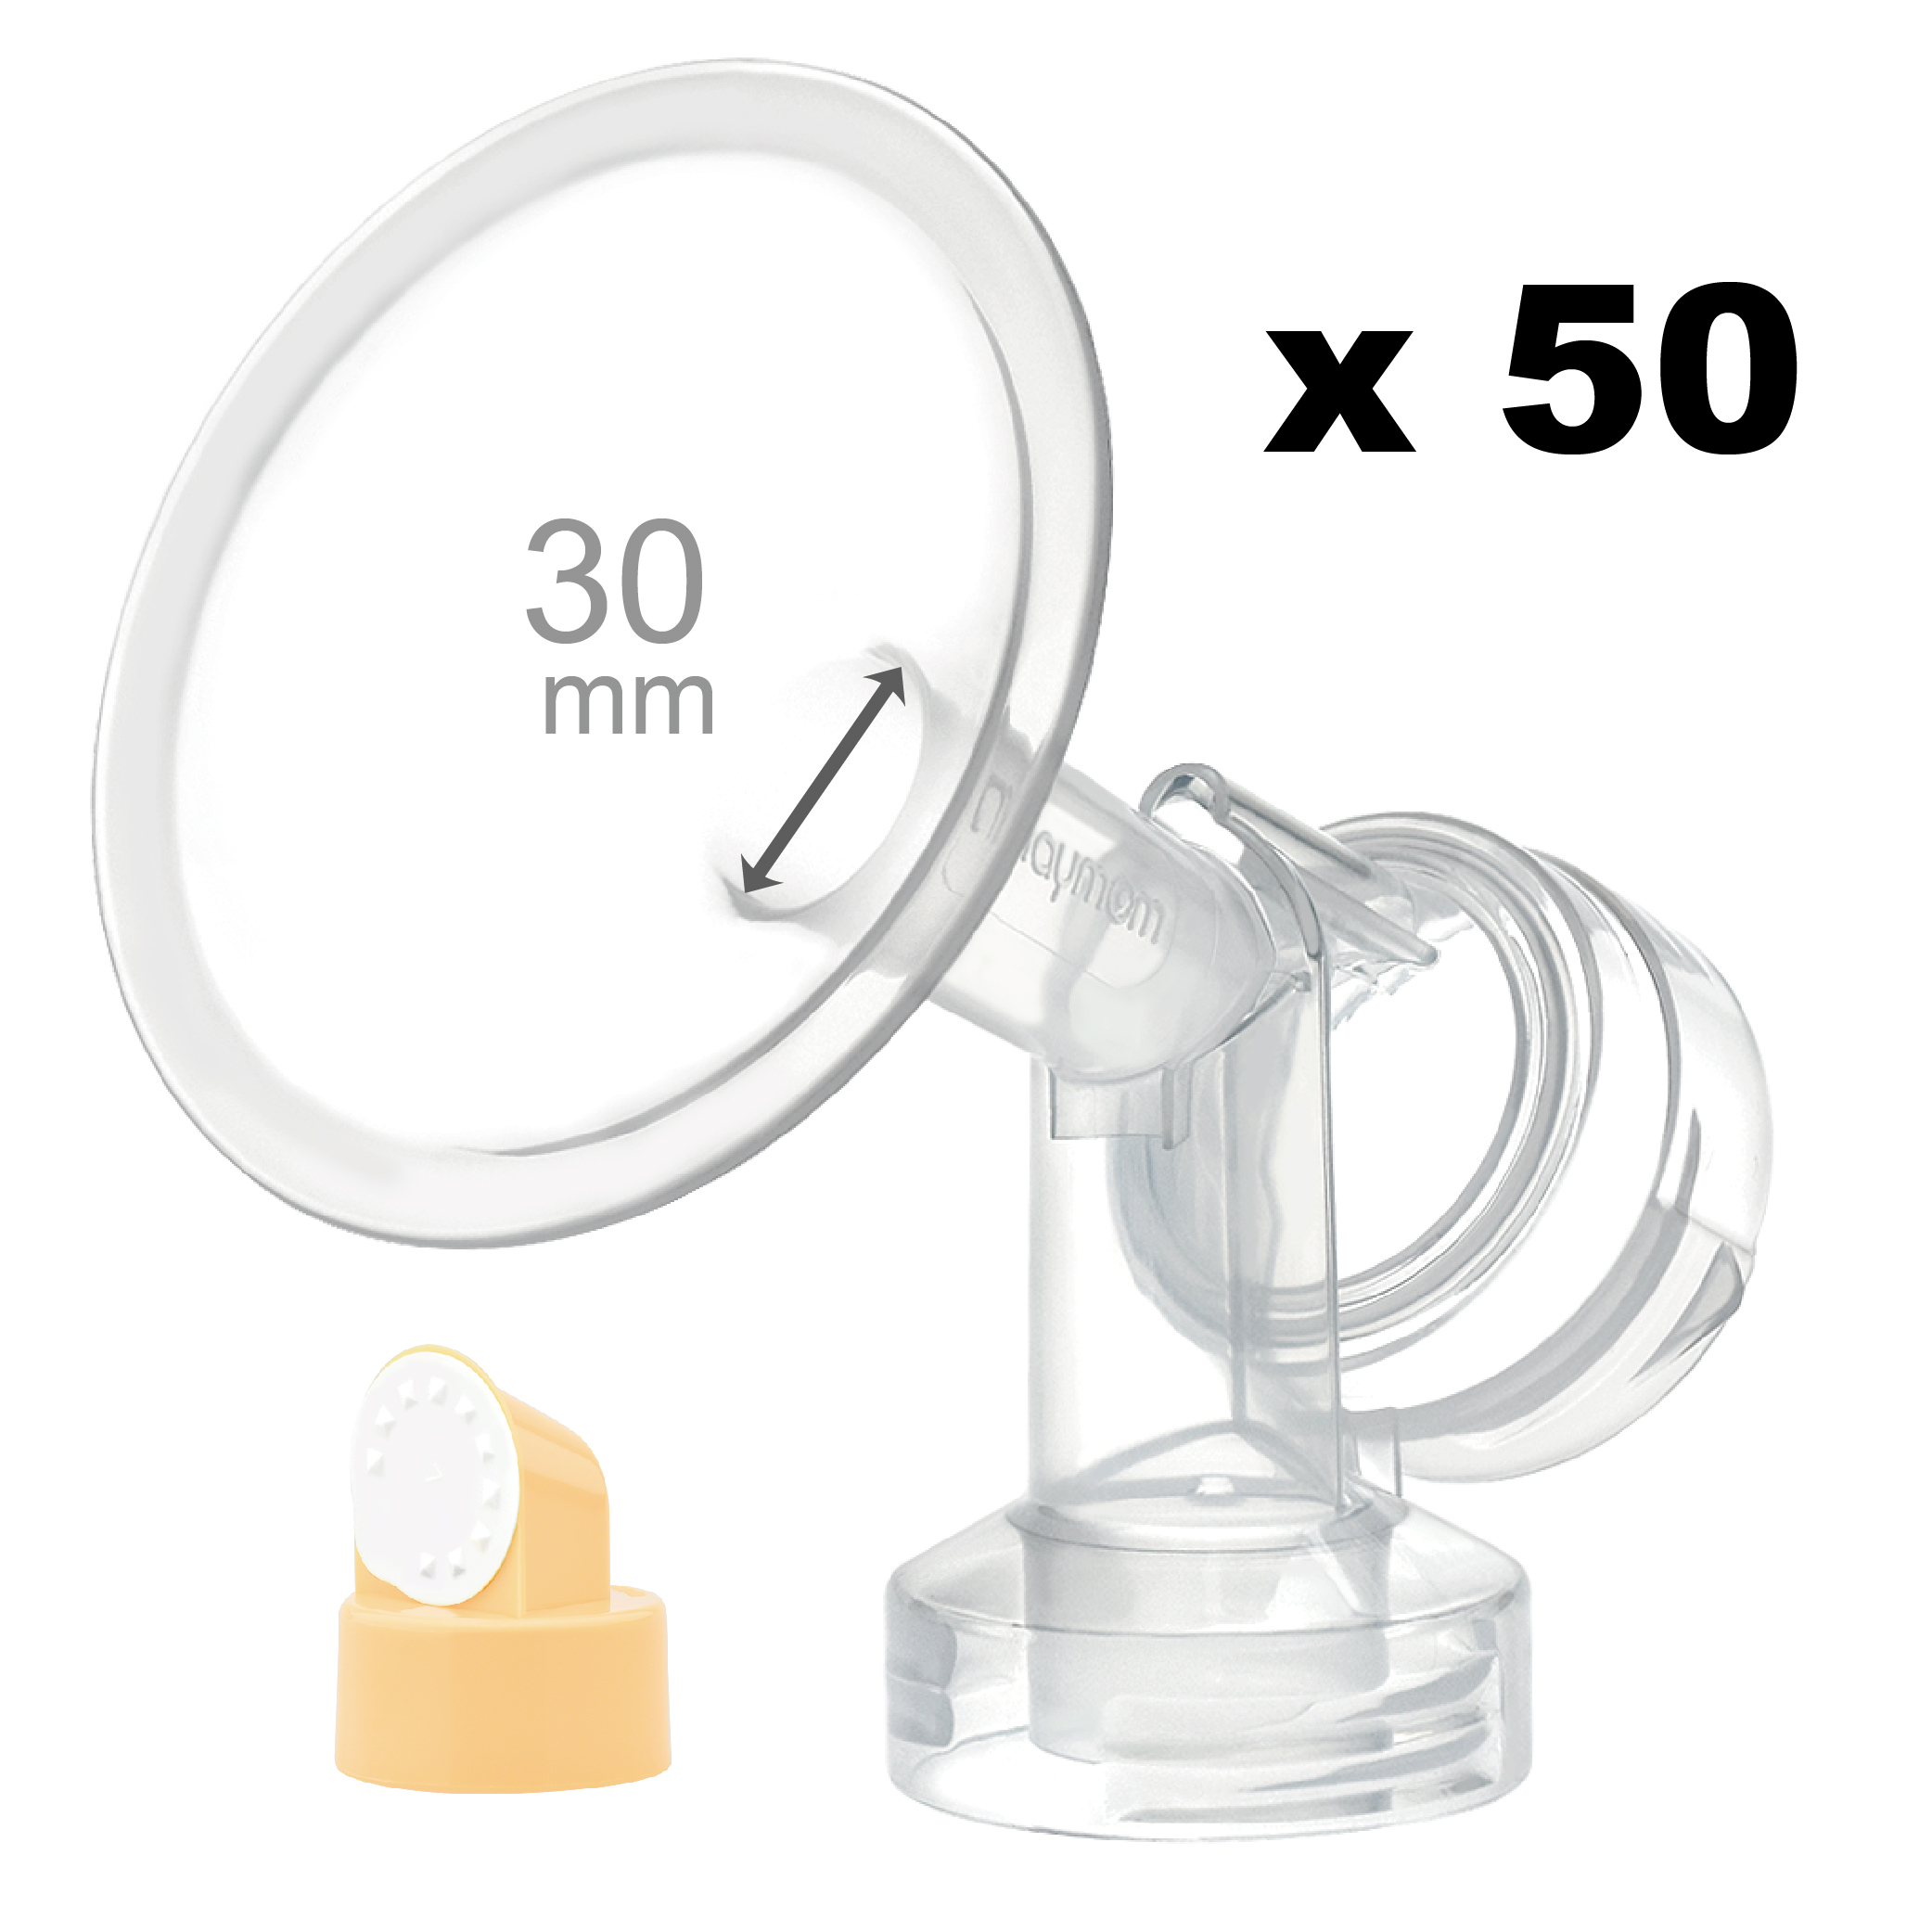 Breastshield (flange) with valve/membrane for Medela, 30 mm, 50 pc; Narrow (Standard) Bottle Neck